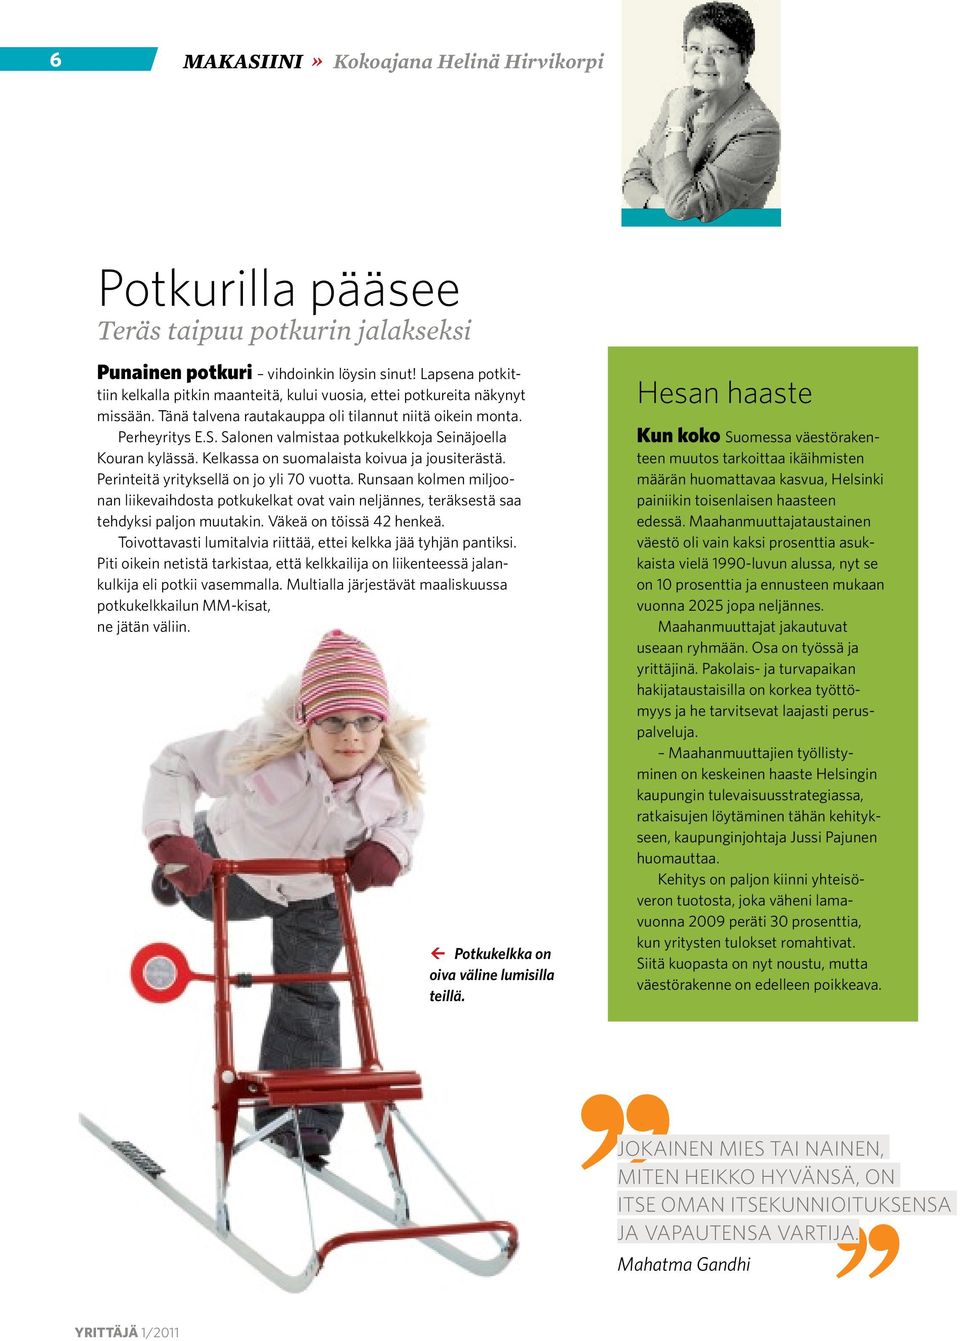 Salonen valmistaa potkukelkkoja Seinäjoella Kouran kylässä. Kelkassa on suomalaista koivua ja jousiterästä. Perinteitä yrityksellä on jo yli 70 vuotta.